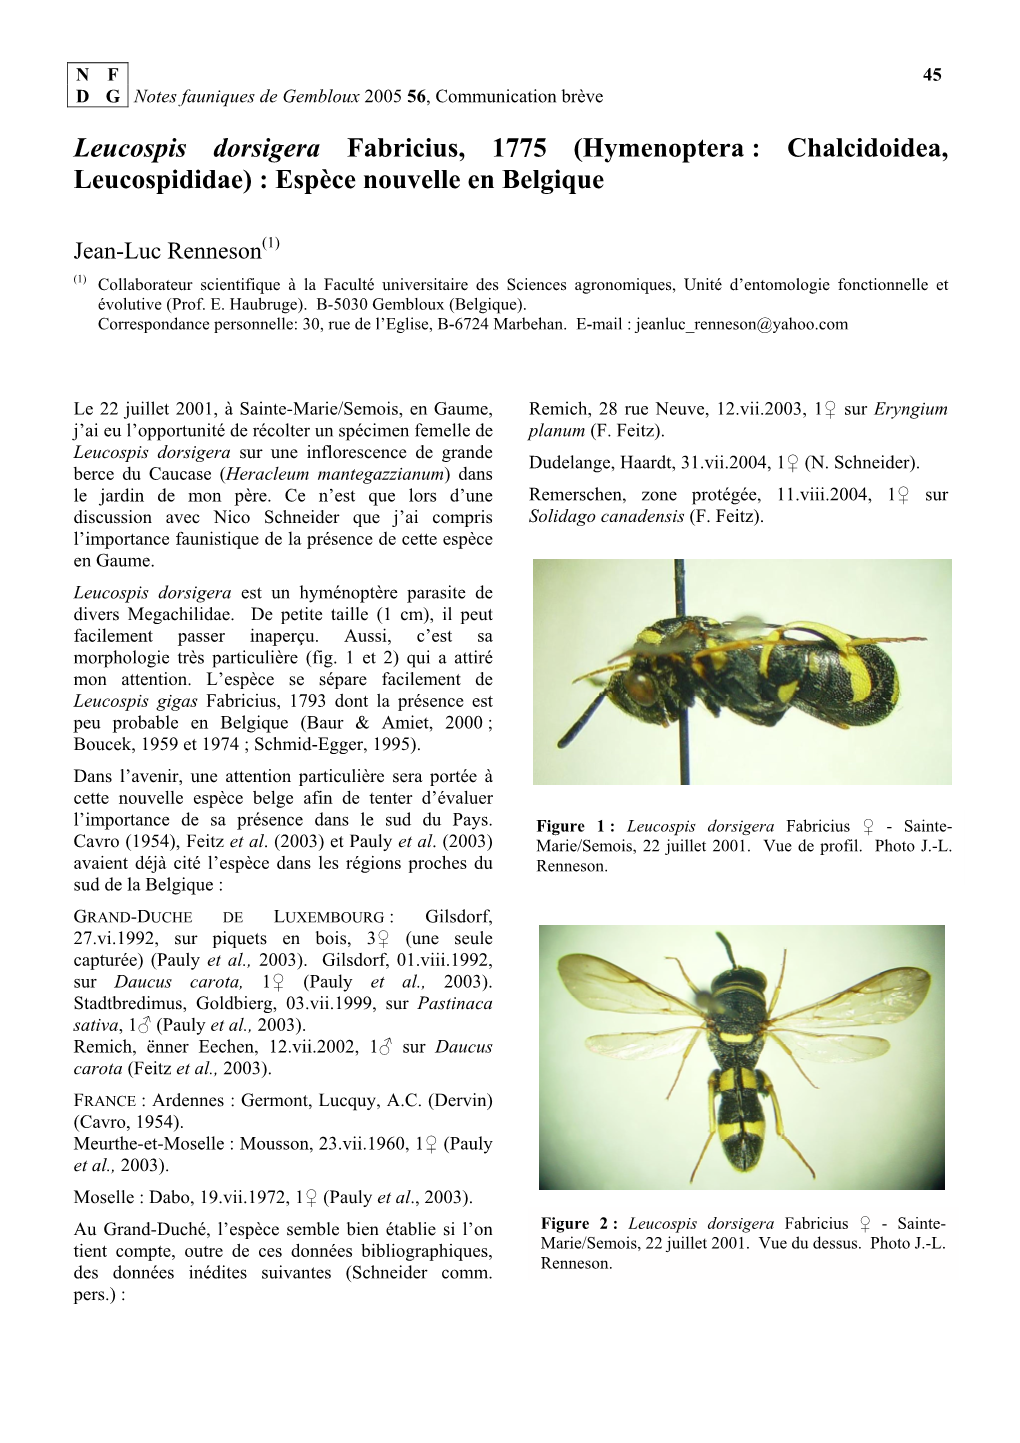 Leucospis Dorsigera Fabricius, 1775 (Hymenoptera : Chalcidoidea, Leucospididae) : Espèce Nouvelle En Belgique